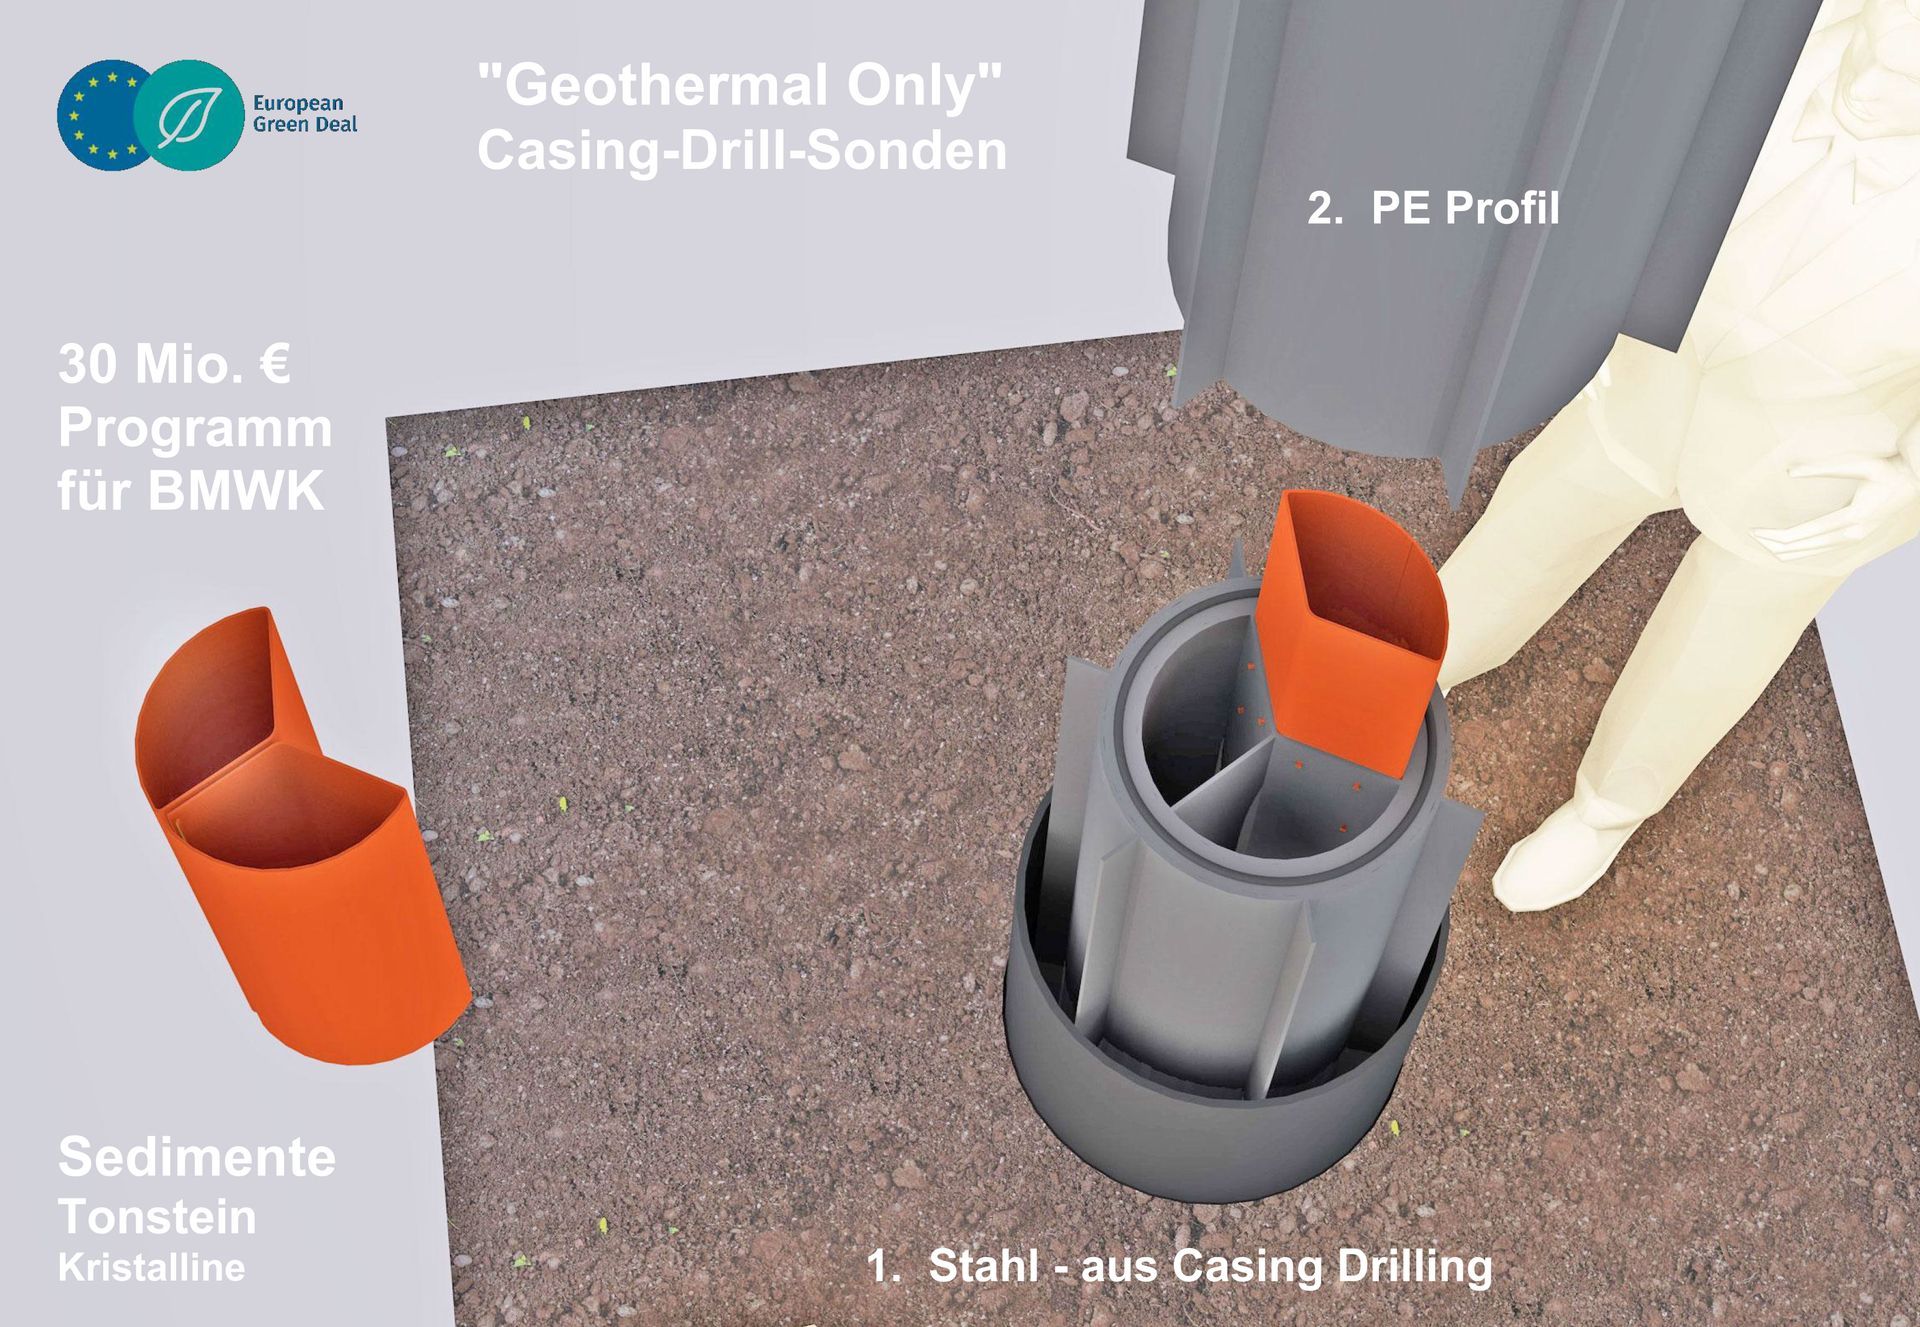 Koaxial-Sonde für mittel-tiefe Geothermie - eine Produkt-Idee der Deutschland AG